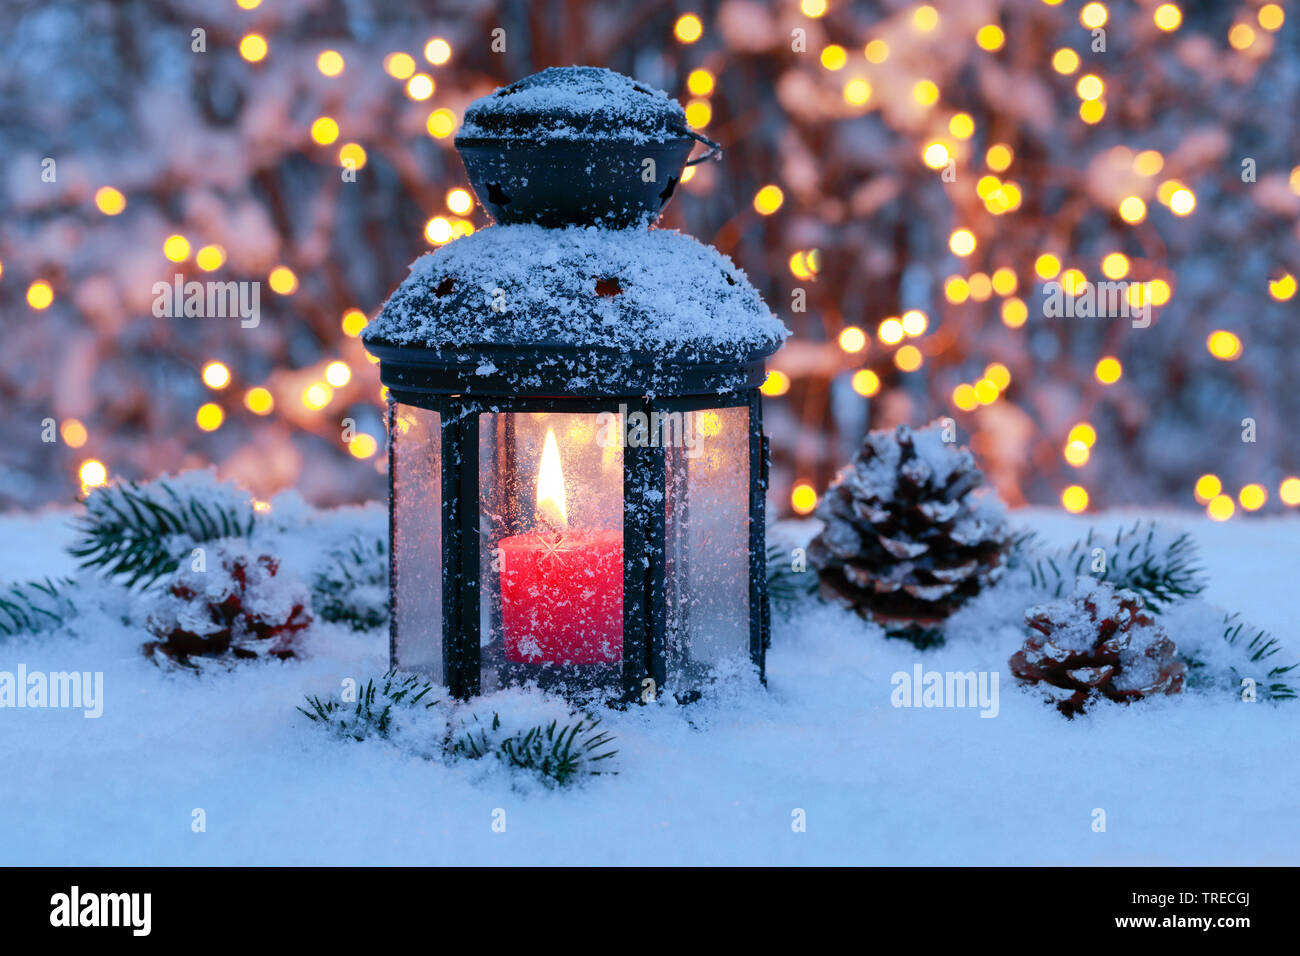 lantern with christmas illumination outside, Switzerland Stock Photo